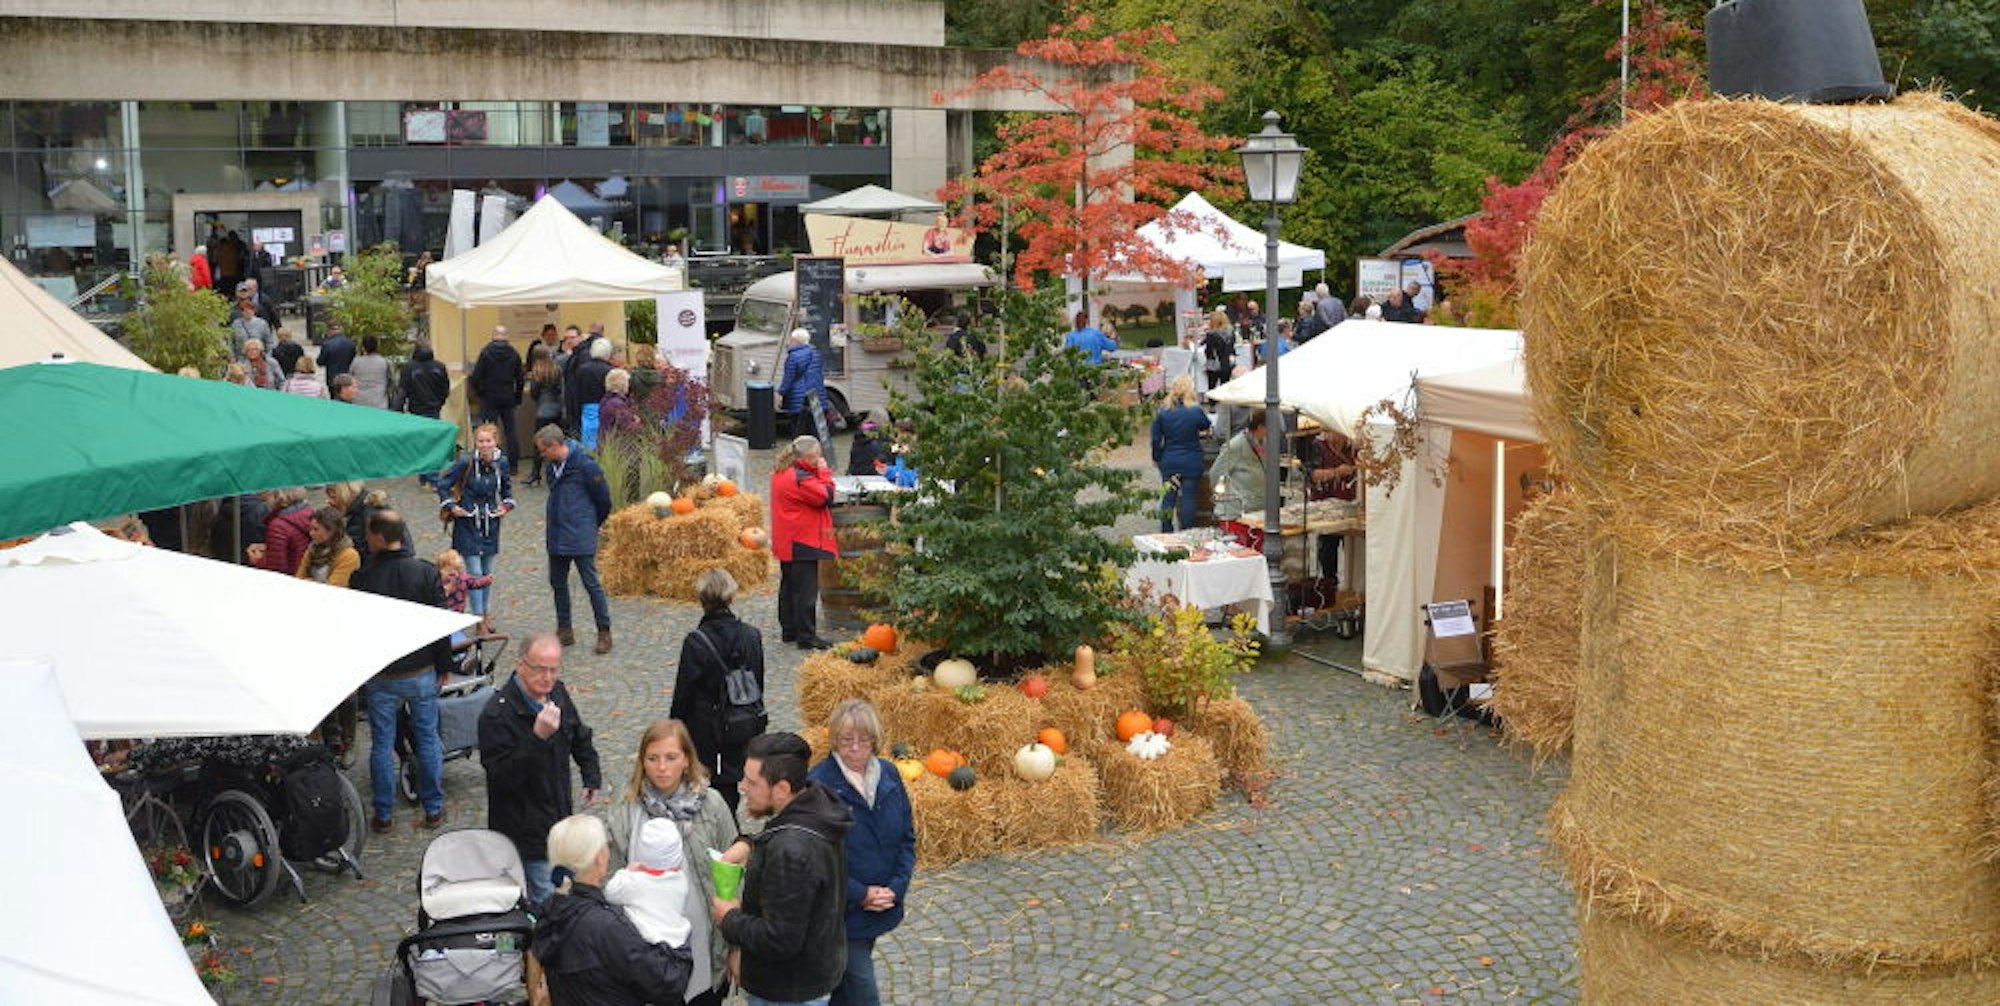 Mit kontrolliertem Zugang, Erfassung von Kontaktdaten und viel Platz zwischen den Ständen war der Herbstmarkt in Schloss Eulenbroich möglich.